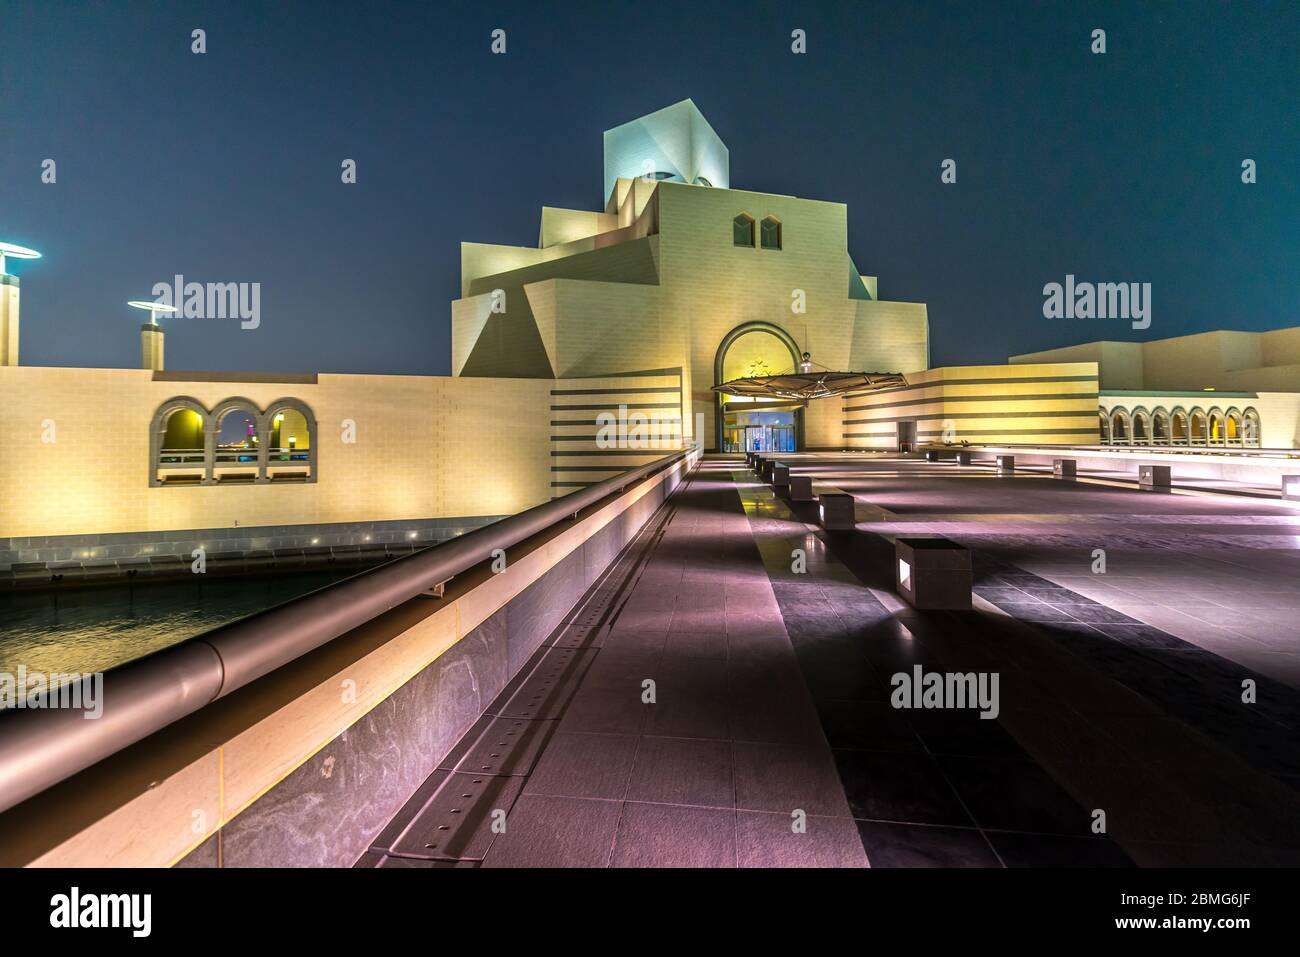 Besuch des Qatar Museum of Islamic Art in Doha Spiegelung in Wasser des Teiches in der Nacht. Futuristische Architektur in der Nähe der Bucht von Doha. Stockfoto